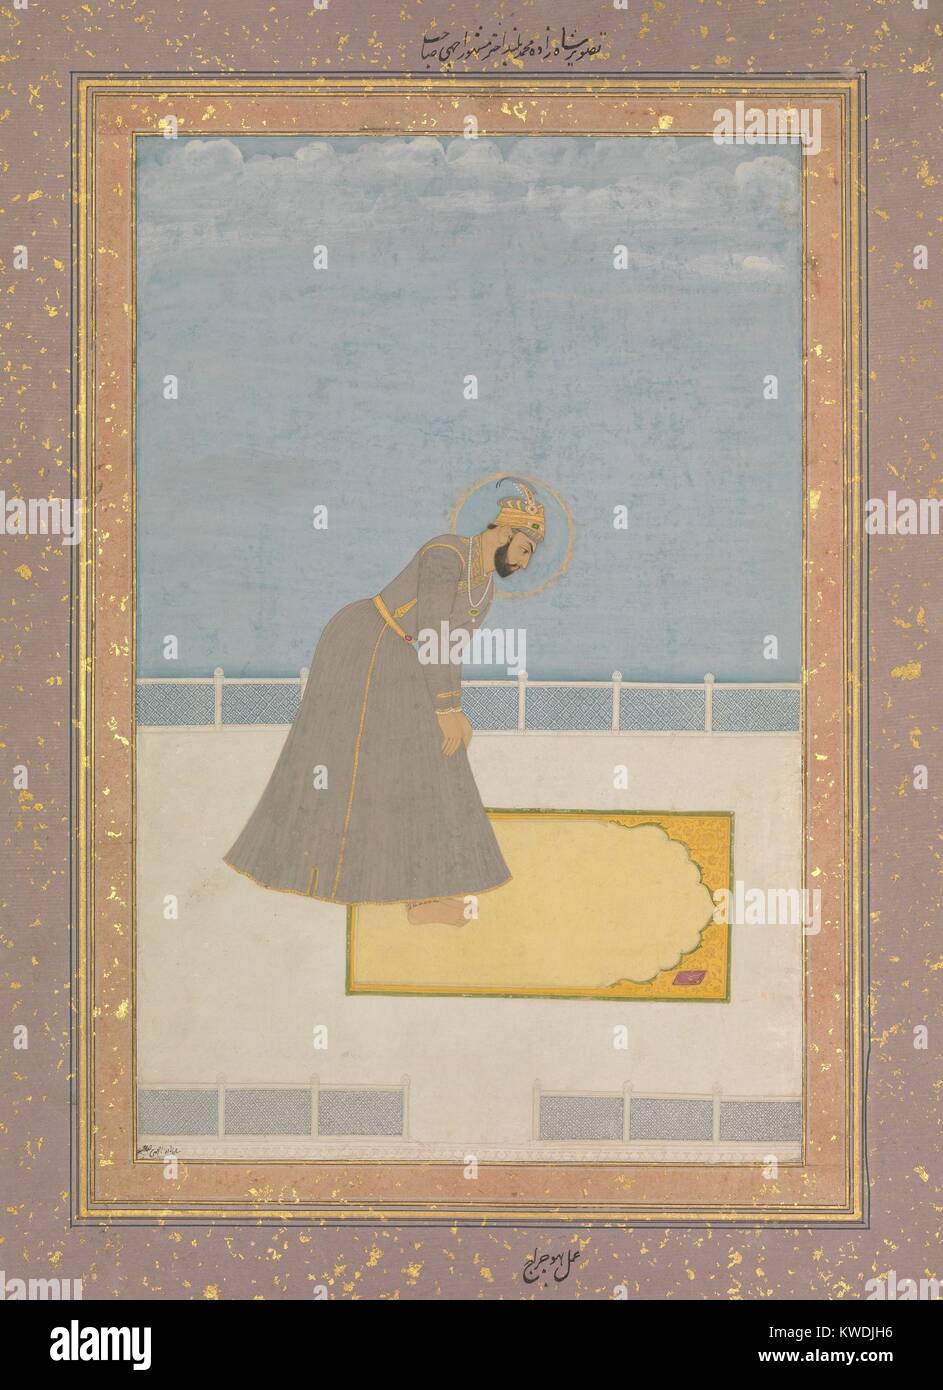 PRINCE MOHAMMED BULAND AKHTAR an Gebet, durch Hujraj, Indische, Mughal Malerei, 17 C., Aquarell. Eine Islamische Mughal Prinz beten auf einer Matte mit einem Design symbolisch für das Tor zum Paradies (BSLOC 2017 16 25) Stockfoto